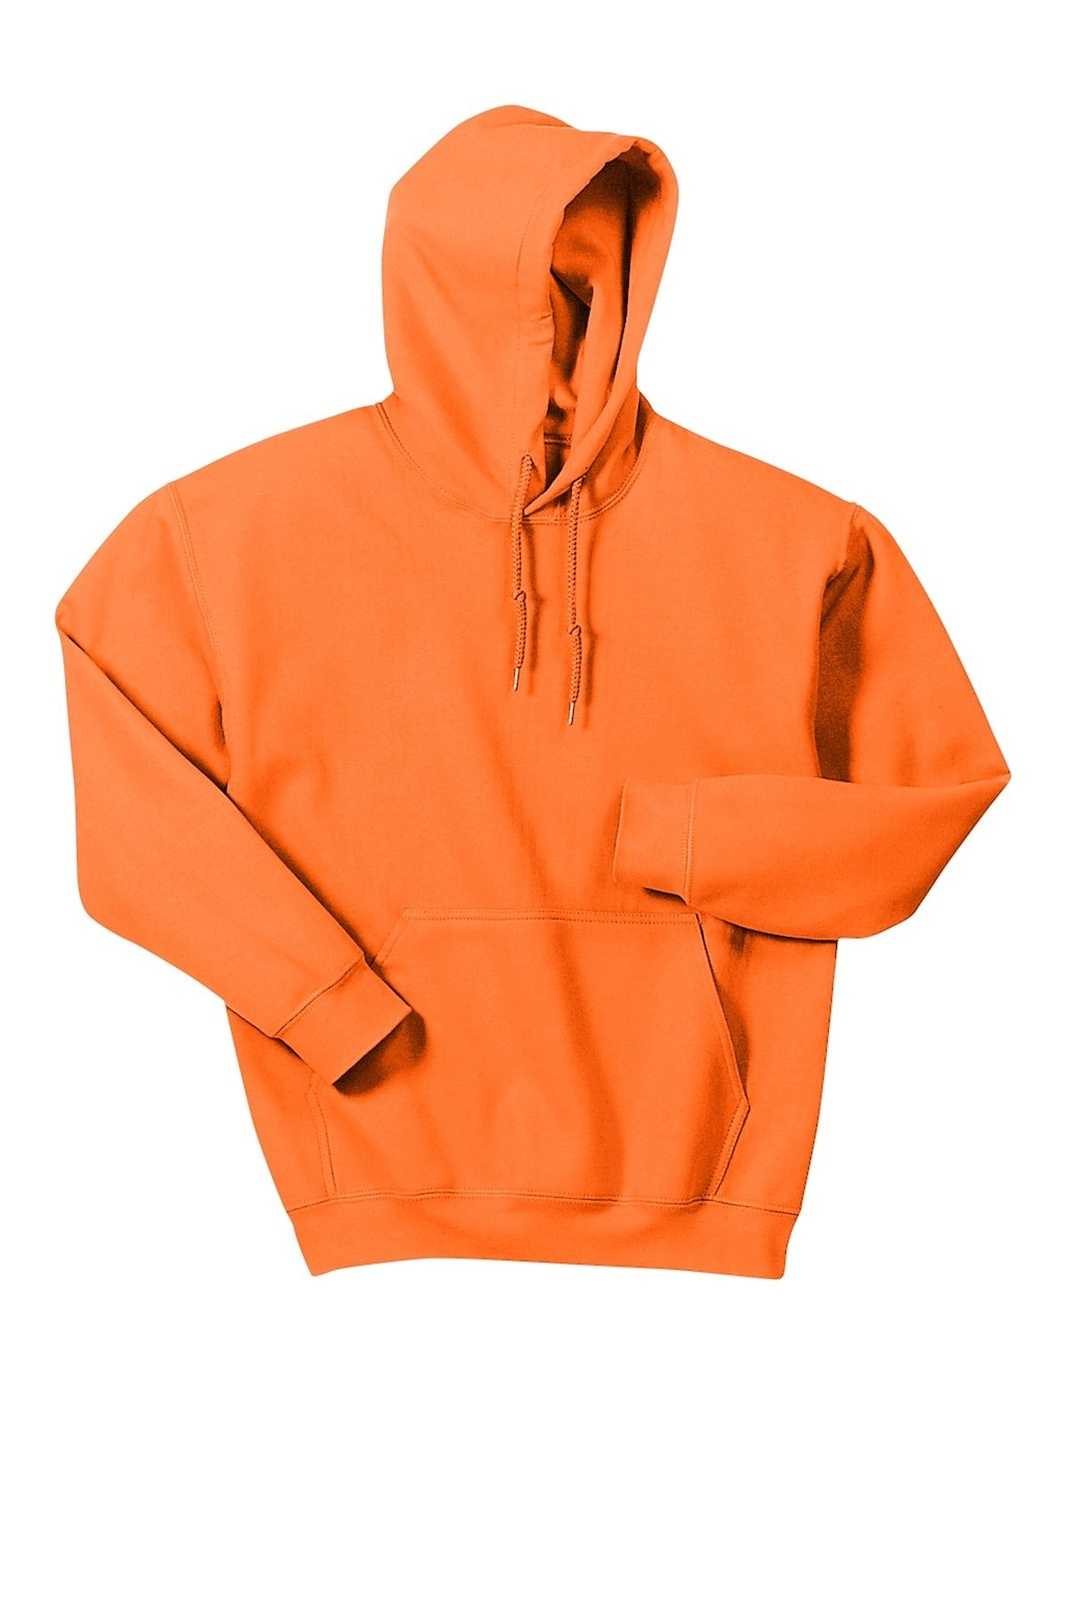 Gildan 18500 Heavy Blend Hooded Sweatshirt - S. Orange - HIT a Double